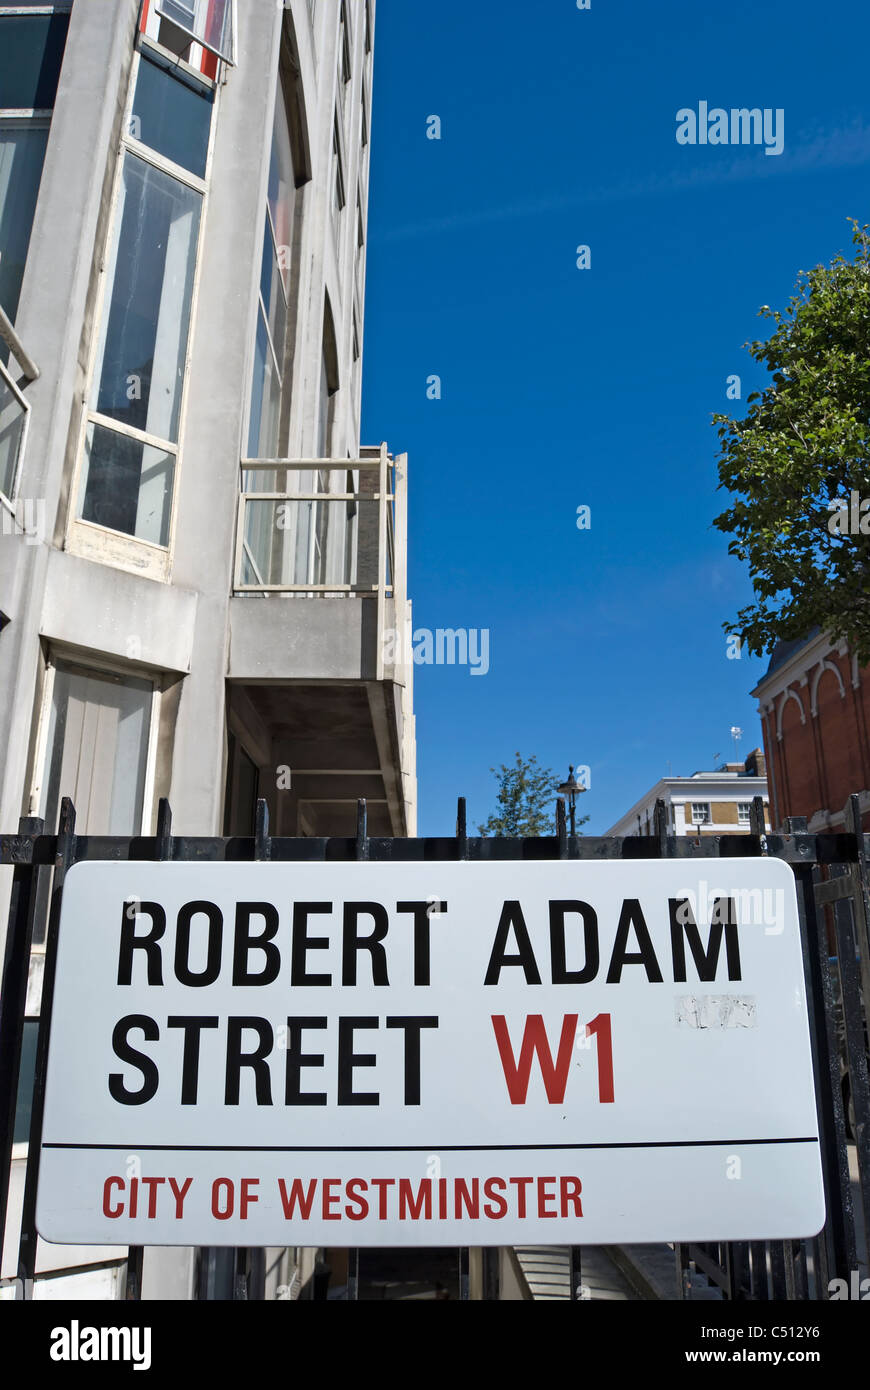 El nombre de la calle firmar por Robert Adam street, London W1, que lleva el nombre del arquitecto cuyo firme diseñado muchas casas en la zona Foto de stock